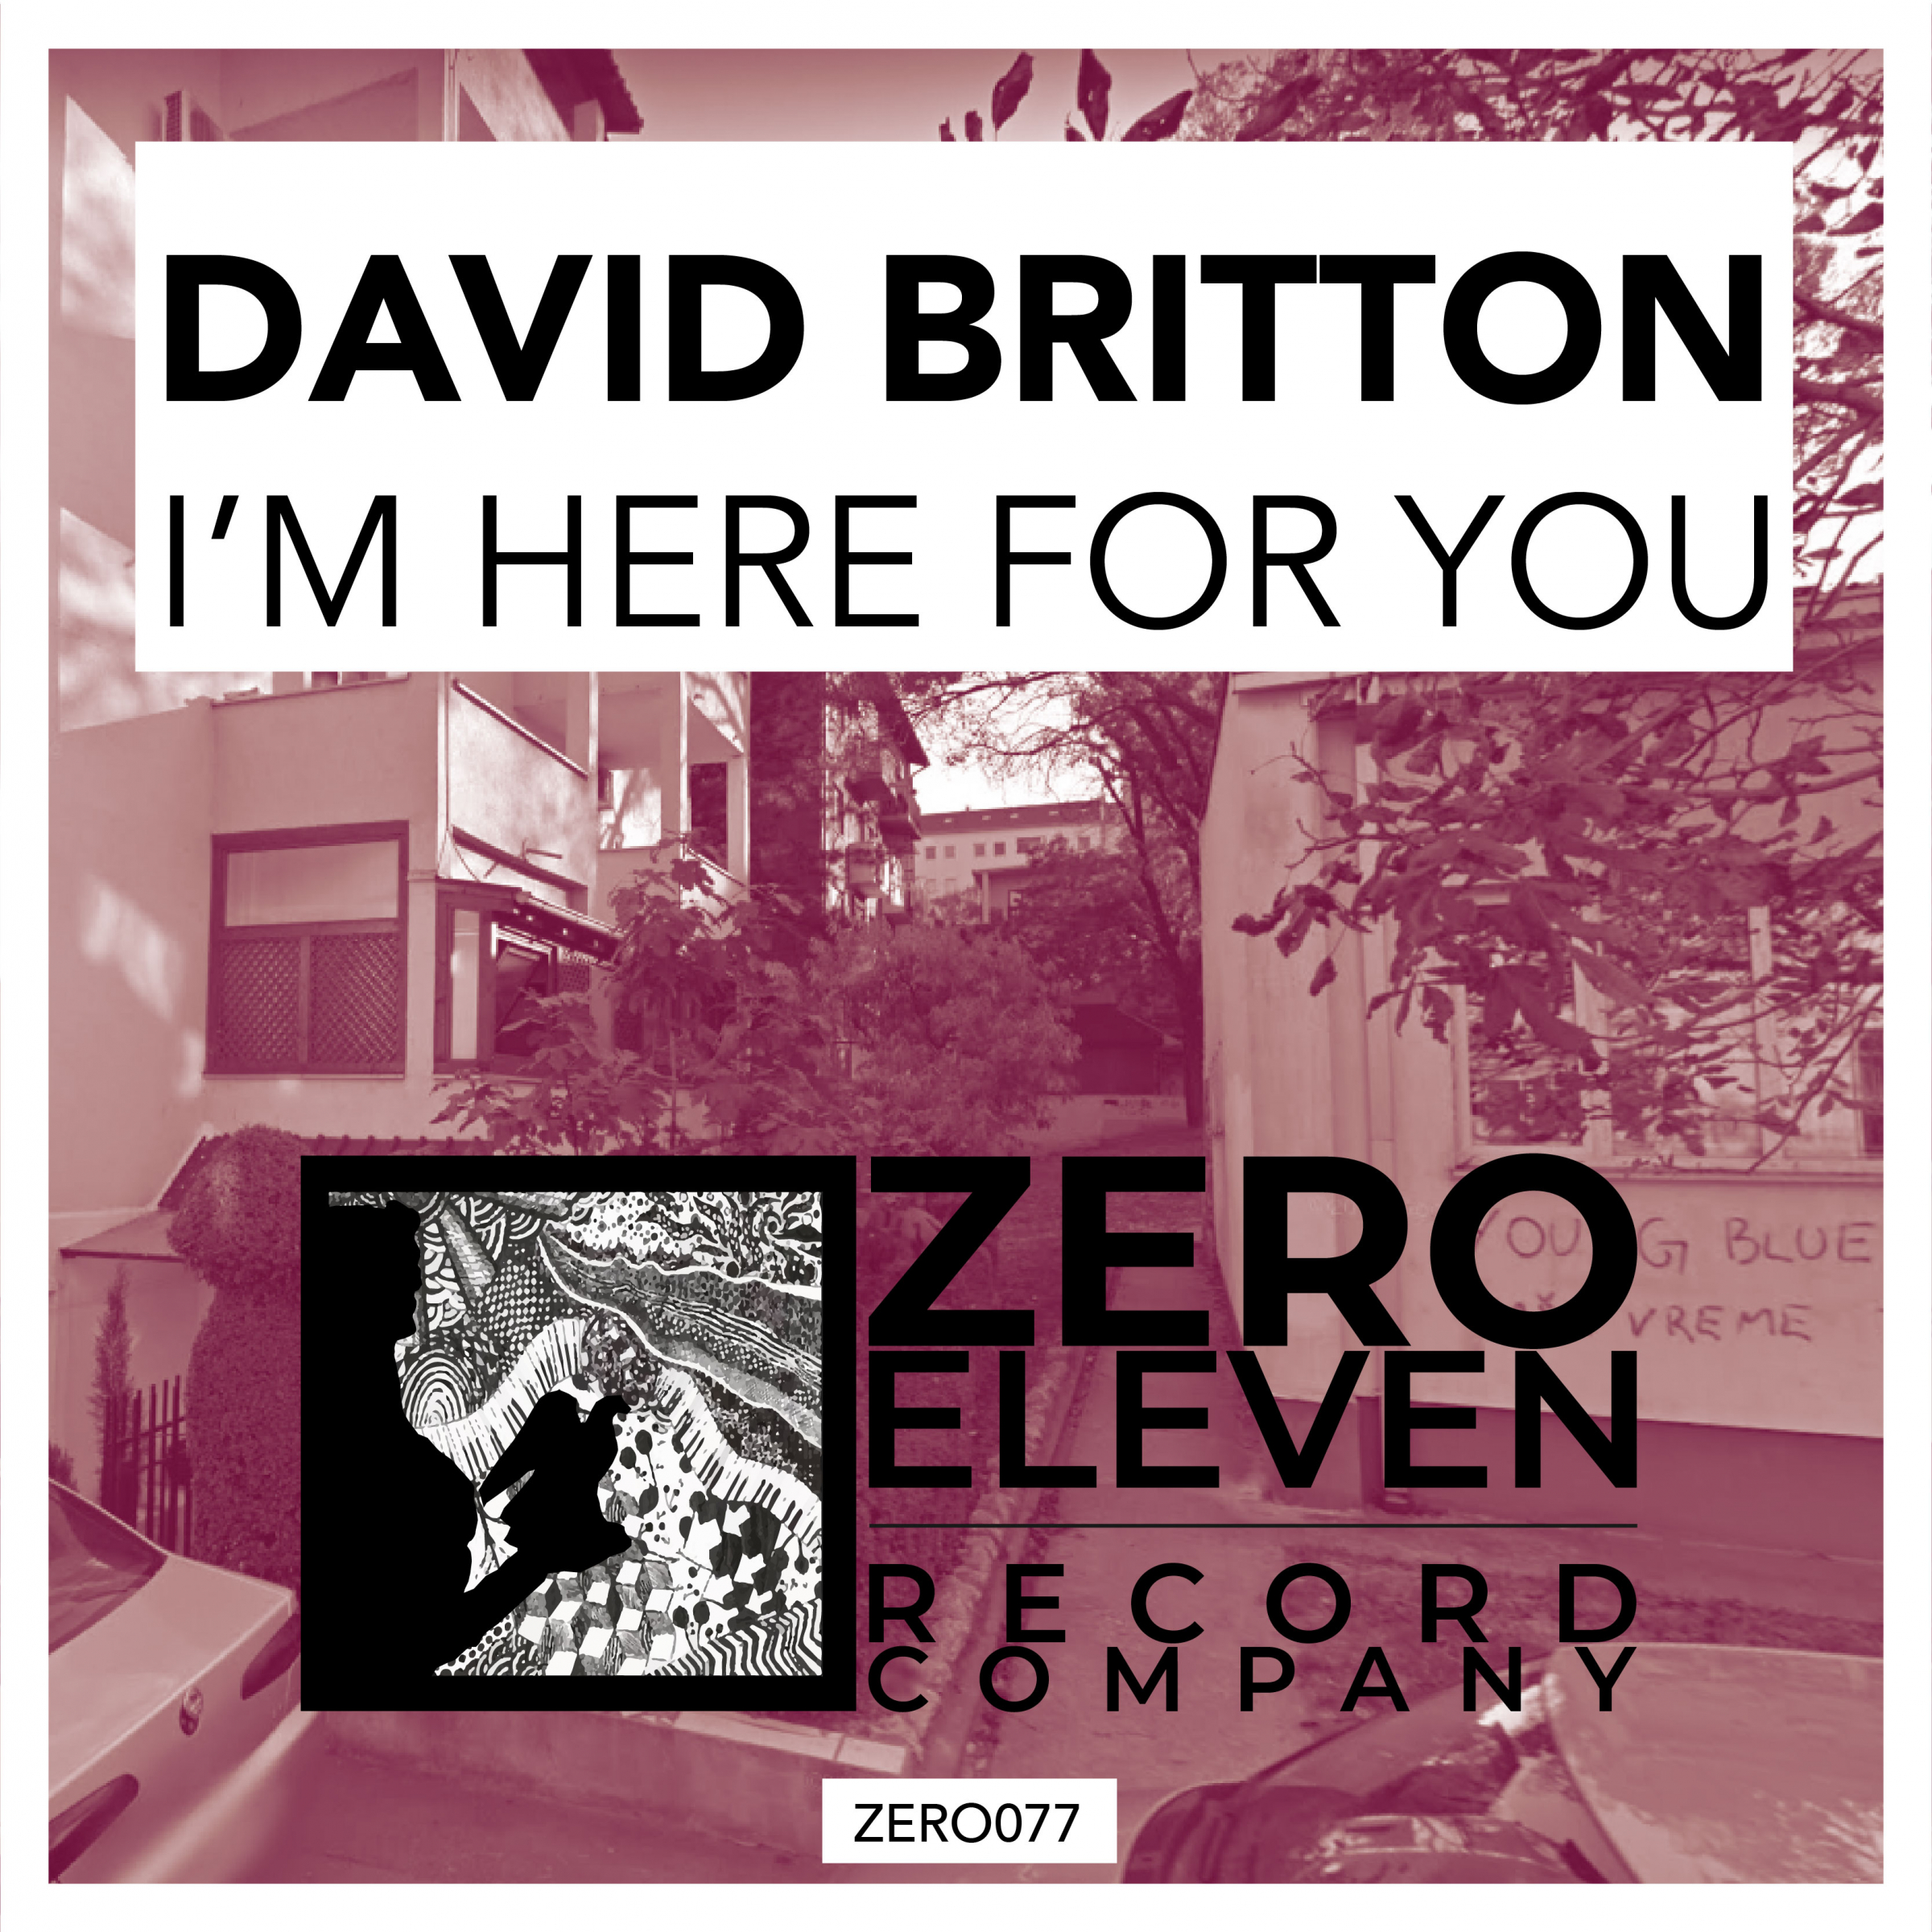 David flac. Britton Chris "as i am". Zero Eleven record Company logo.